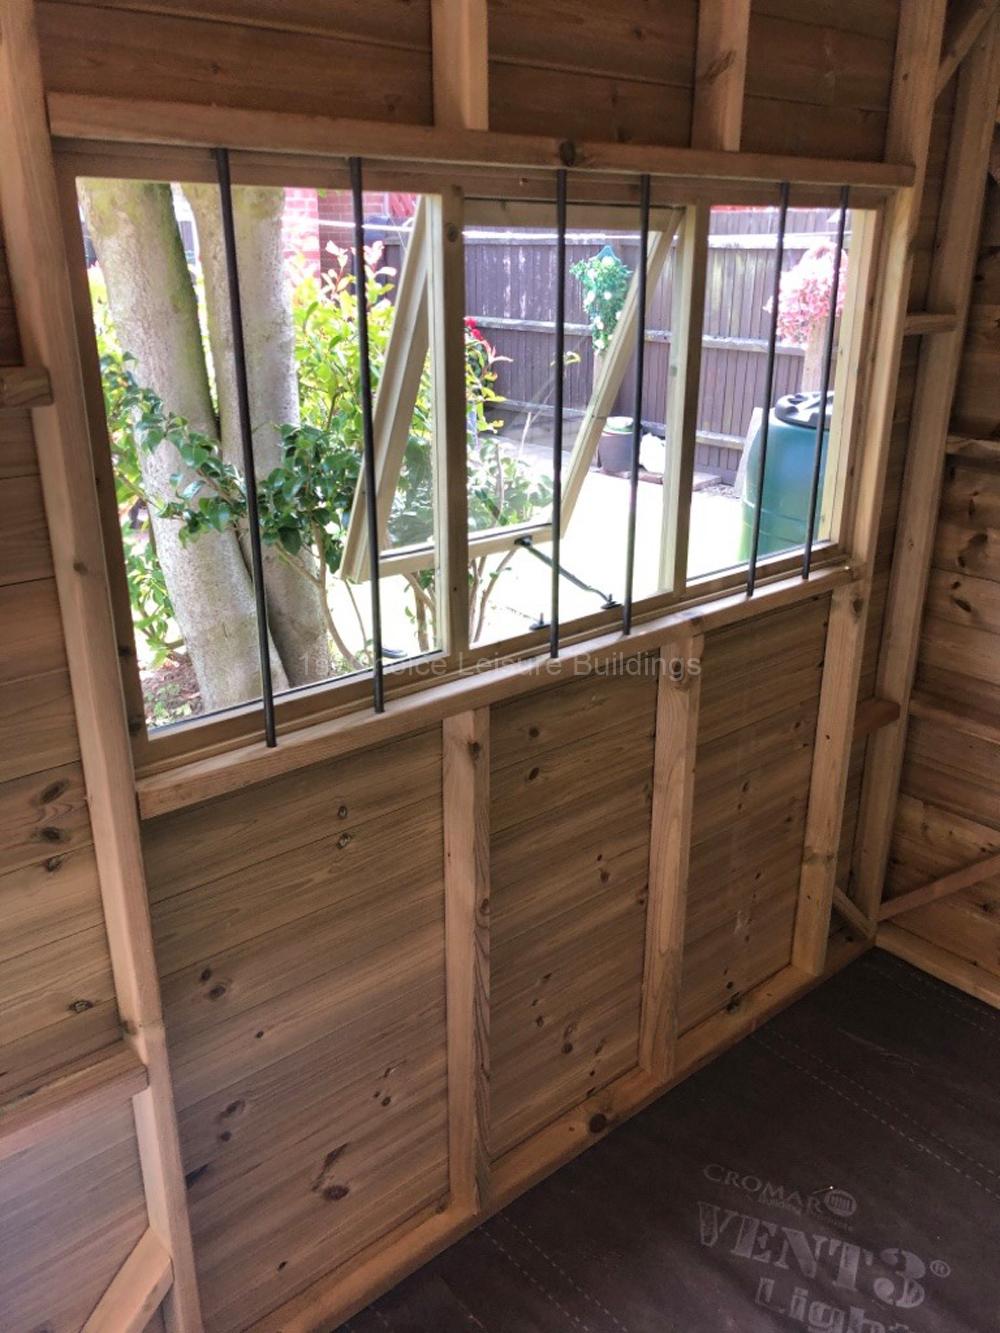 Showing Window Security Bars for Summerhouse - Garden Workshop - Garden Room 1